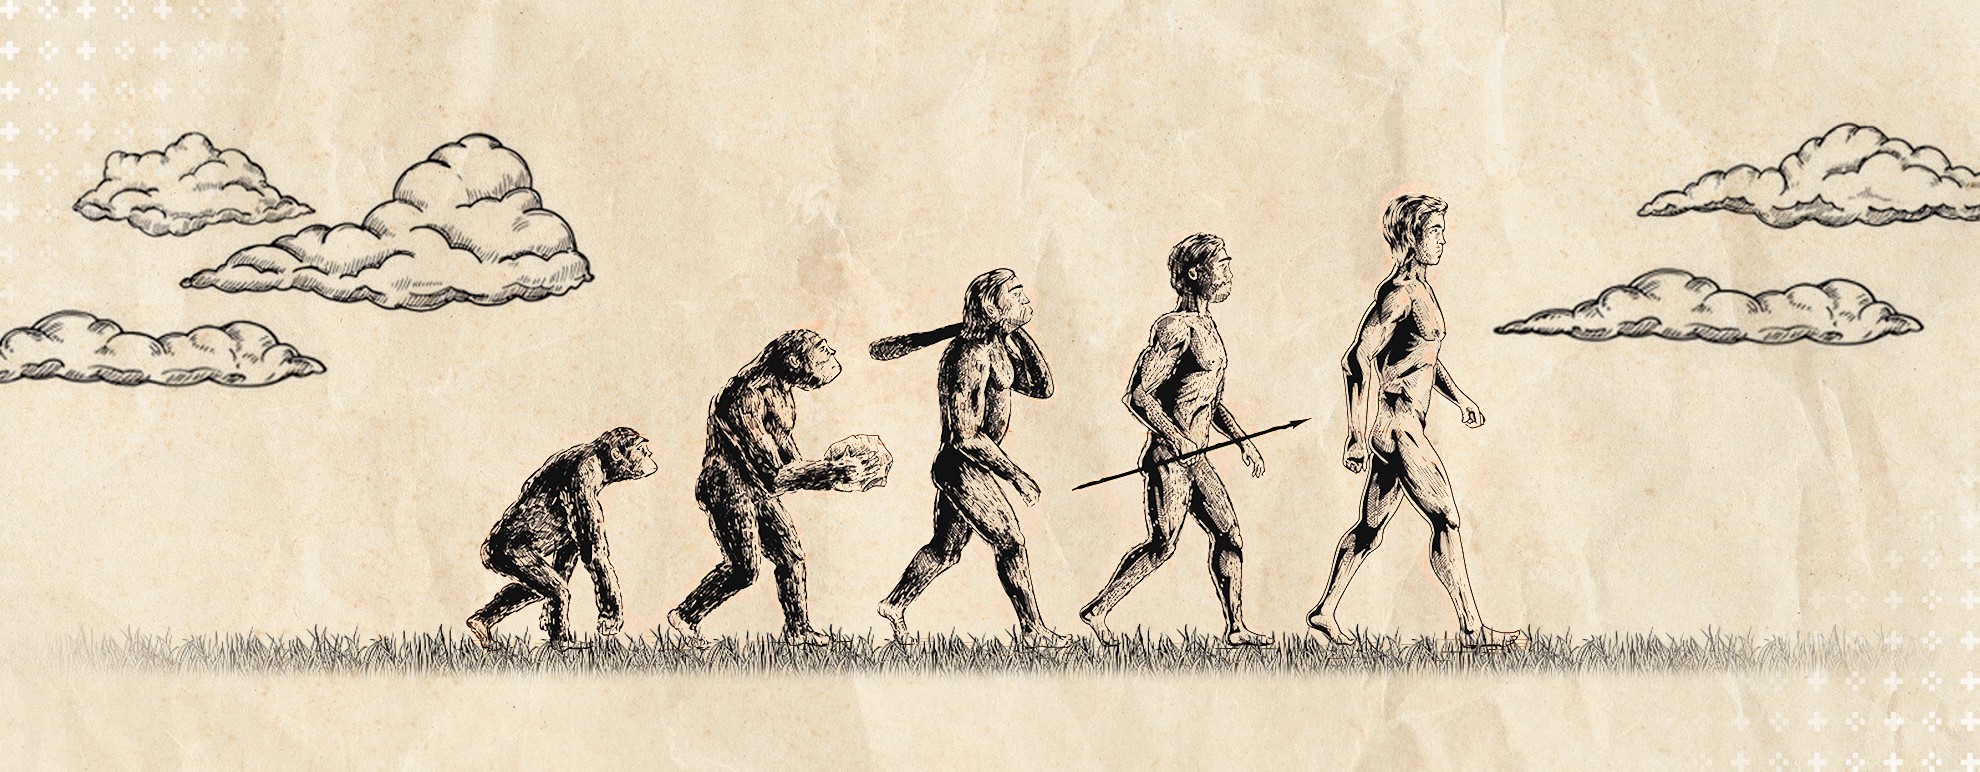 imagem retratando a evolução humana - de um macaco ao homo sapiens